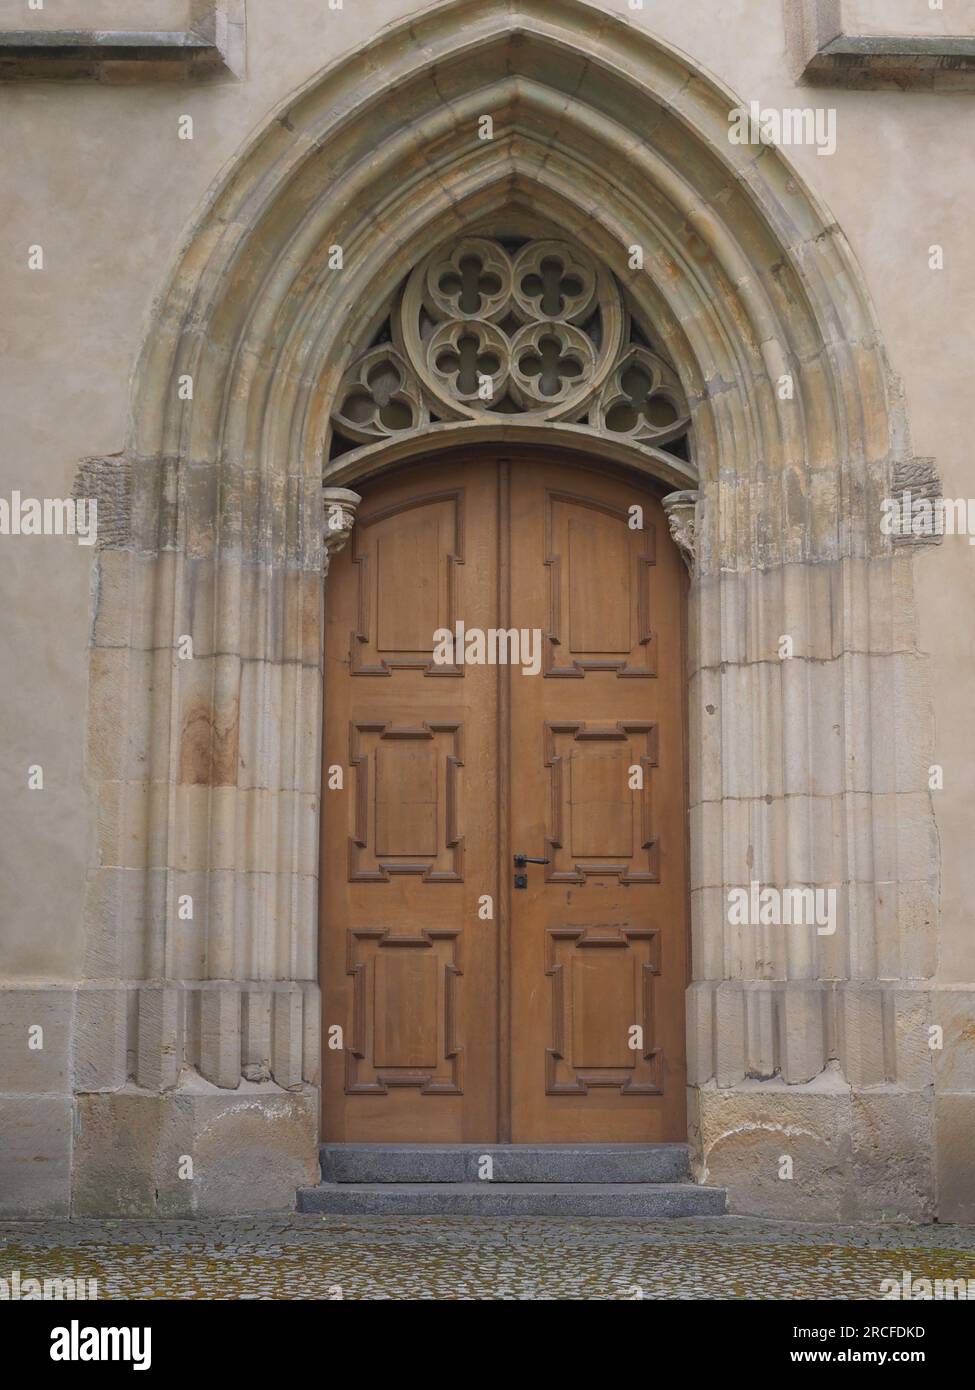 Holztür mit gotischen Ornamenten - Kloster Emmaus, Prager Tschechien Stockfoto